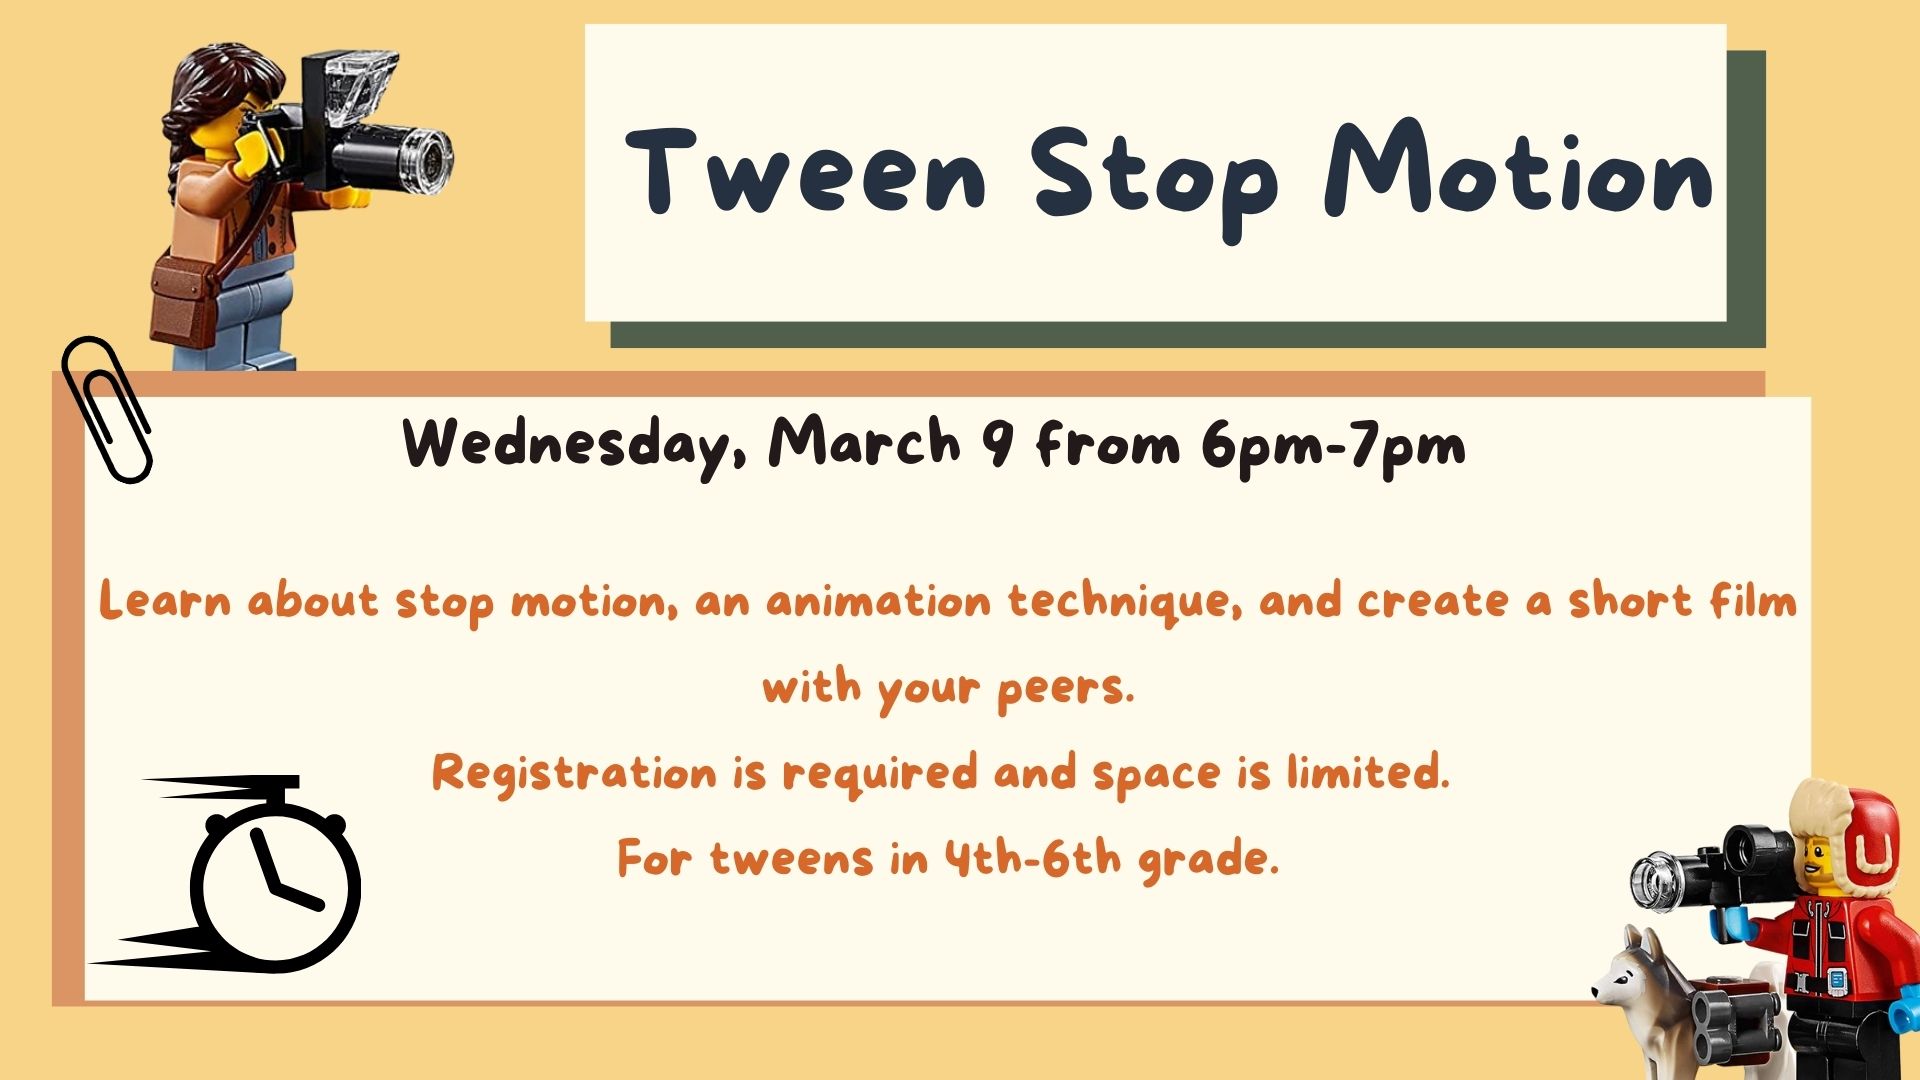 Flyer for Tween Stop Motion program